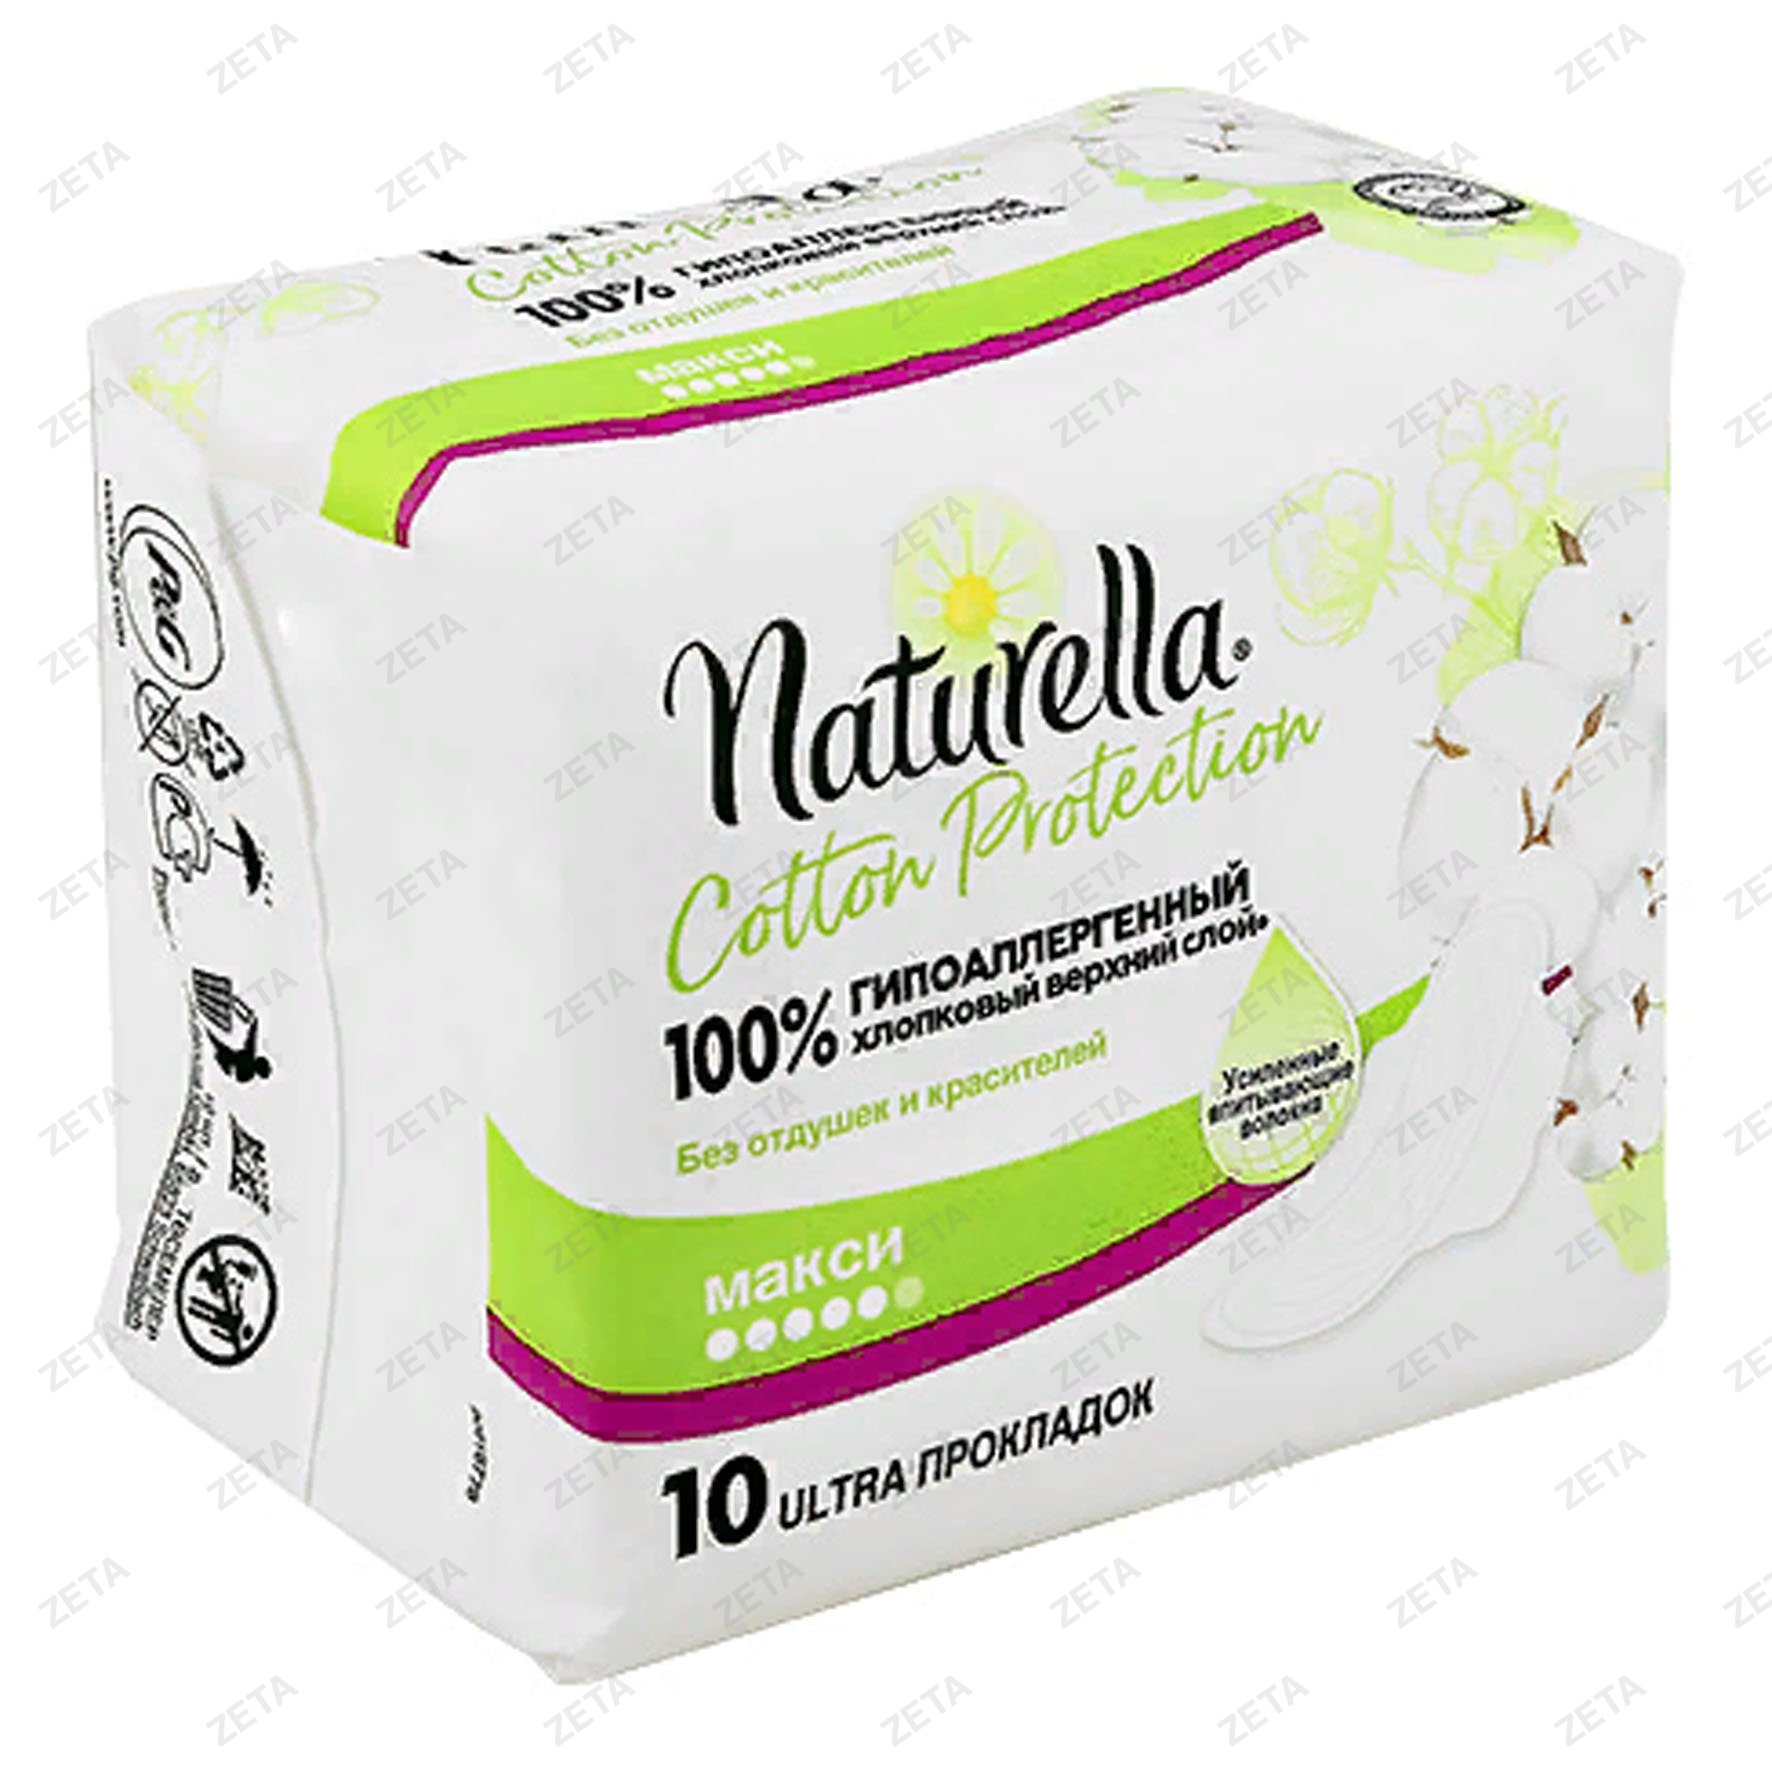 Женские гигиенические прокладки "Naturella Cotton Protection"( Maxi Single) 10 шт.